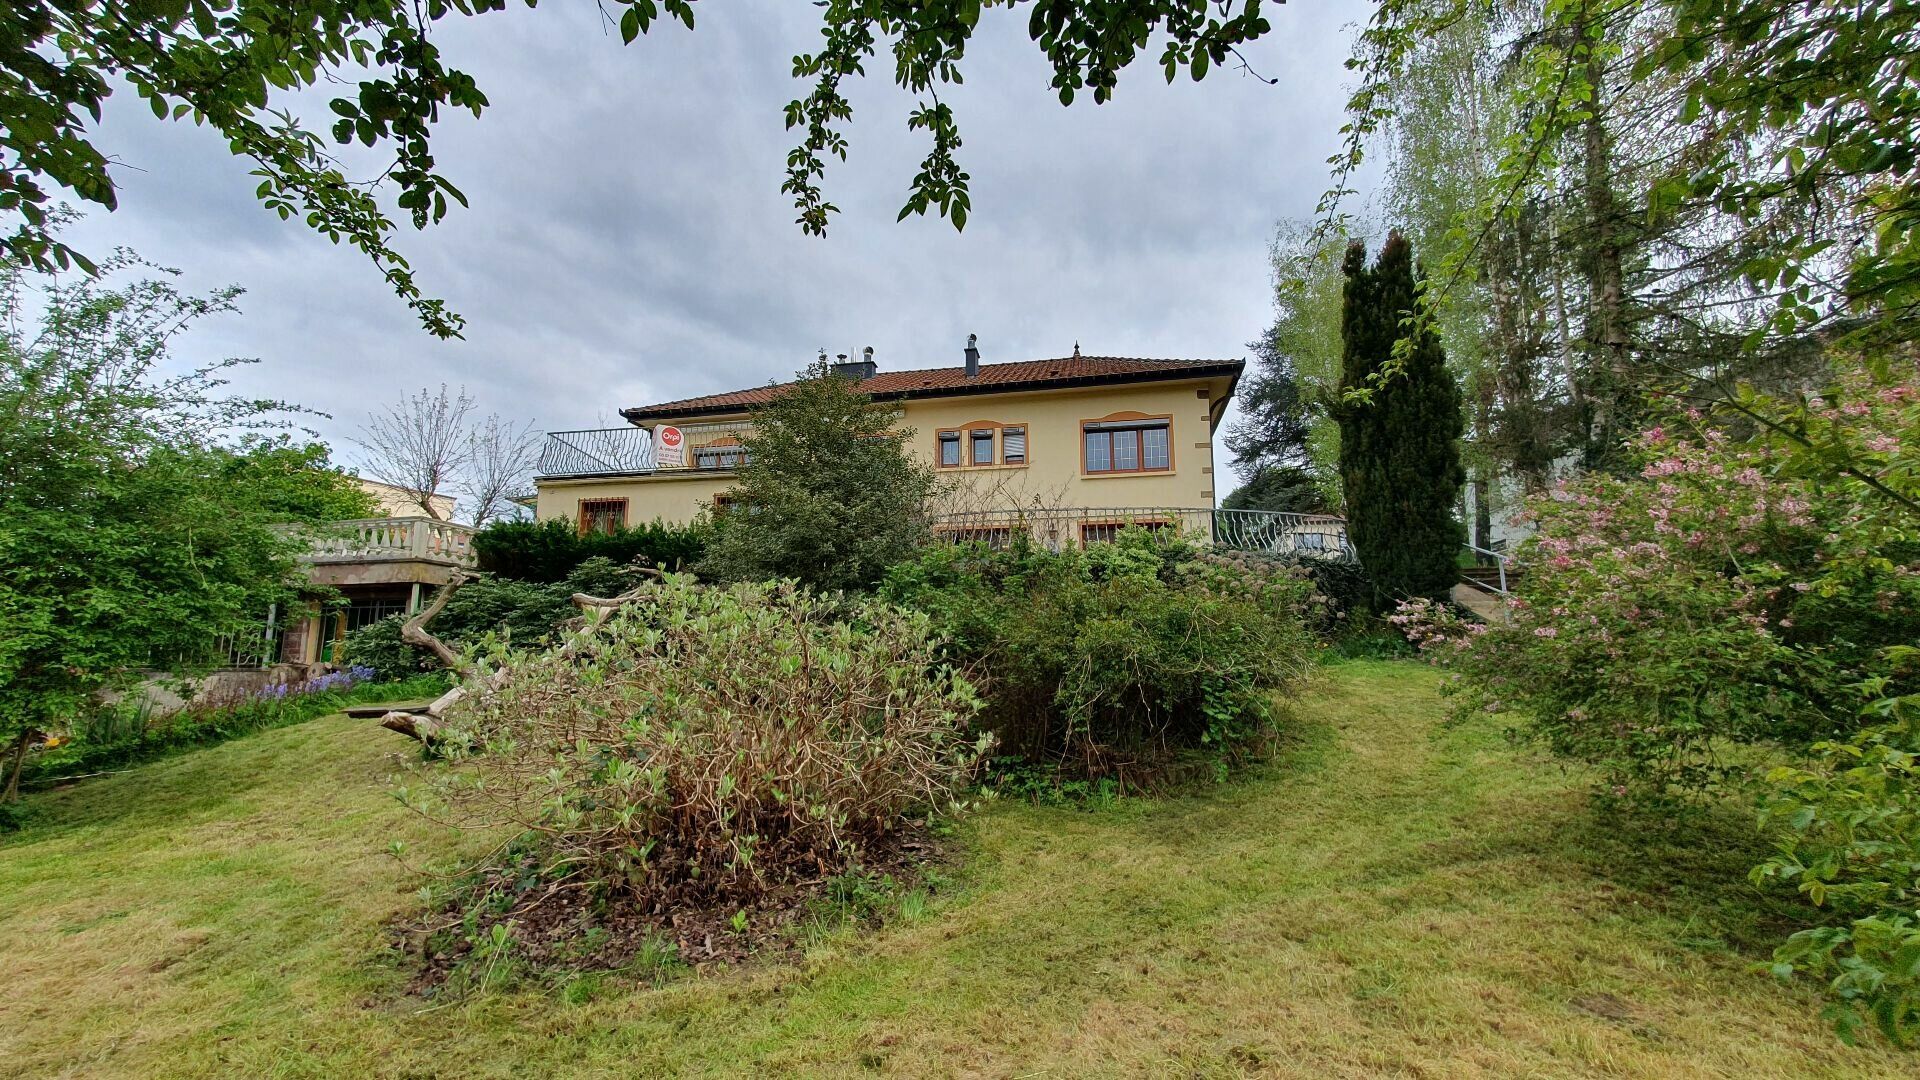 Maison à vendre 8 158m2 à Lorry-lès-Metz vignette-13